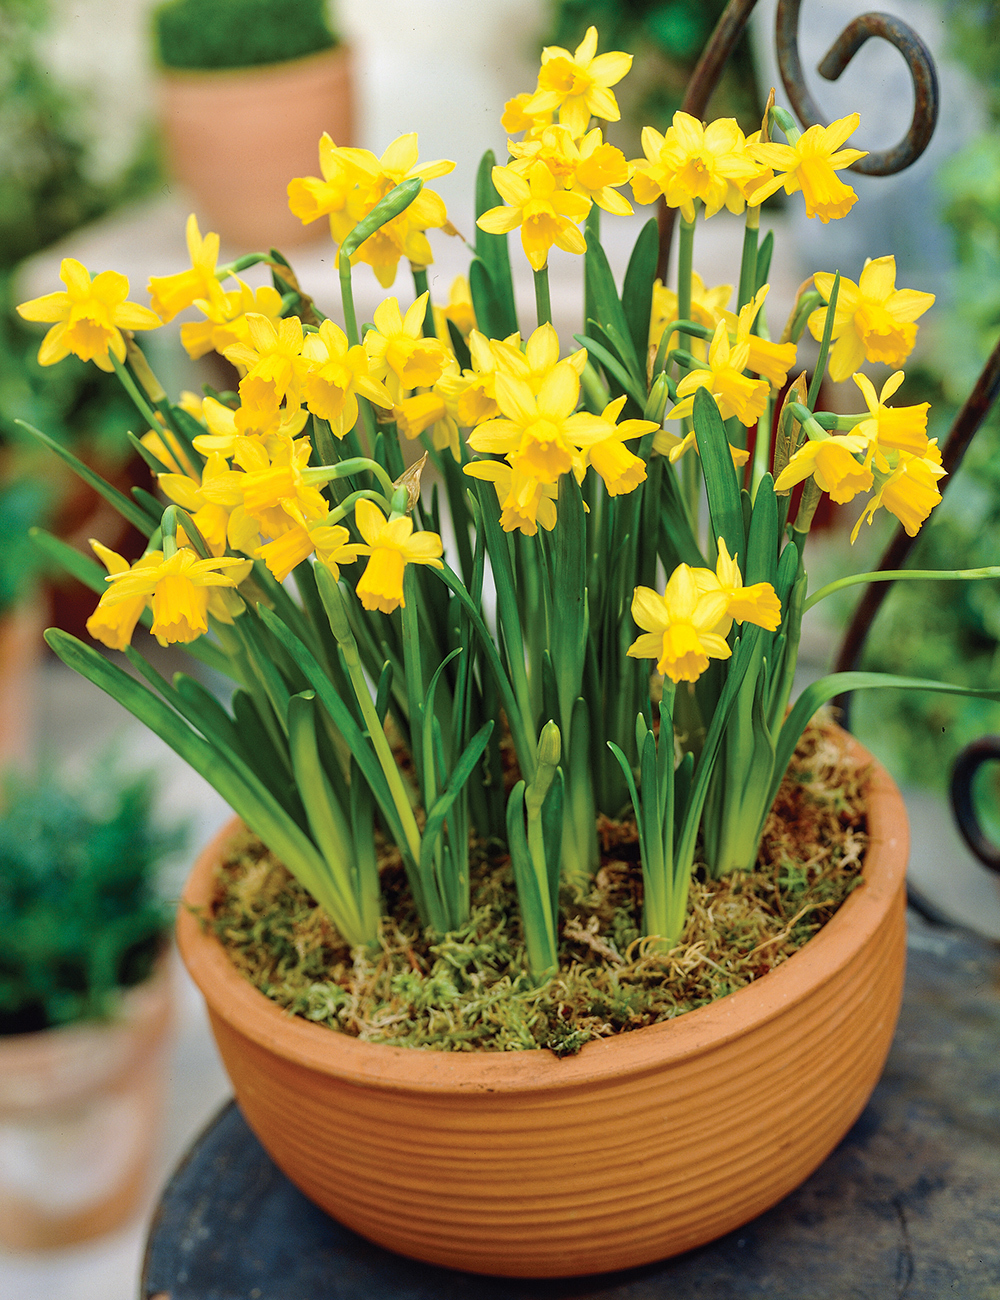 Ý nghĩa của Thủy tiên hoa vàng – Daffodil